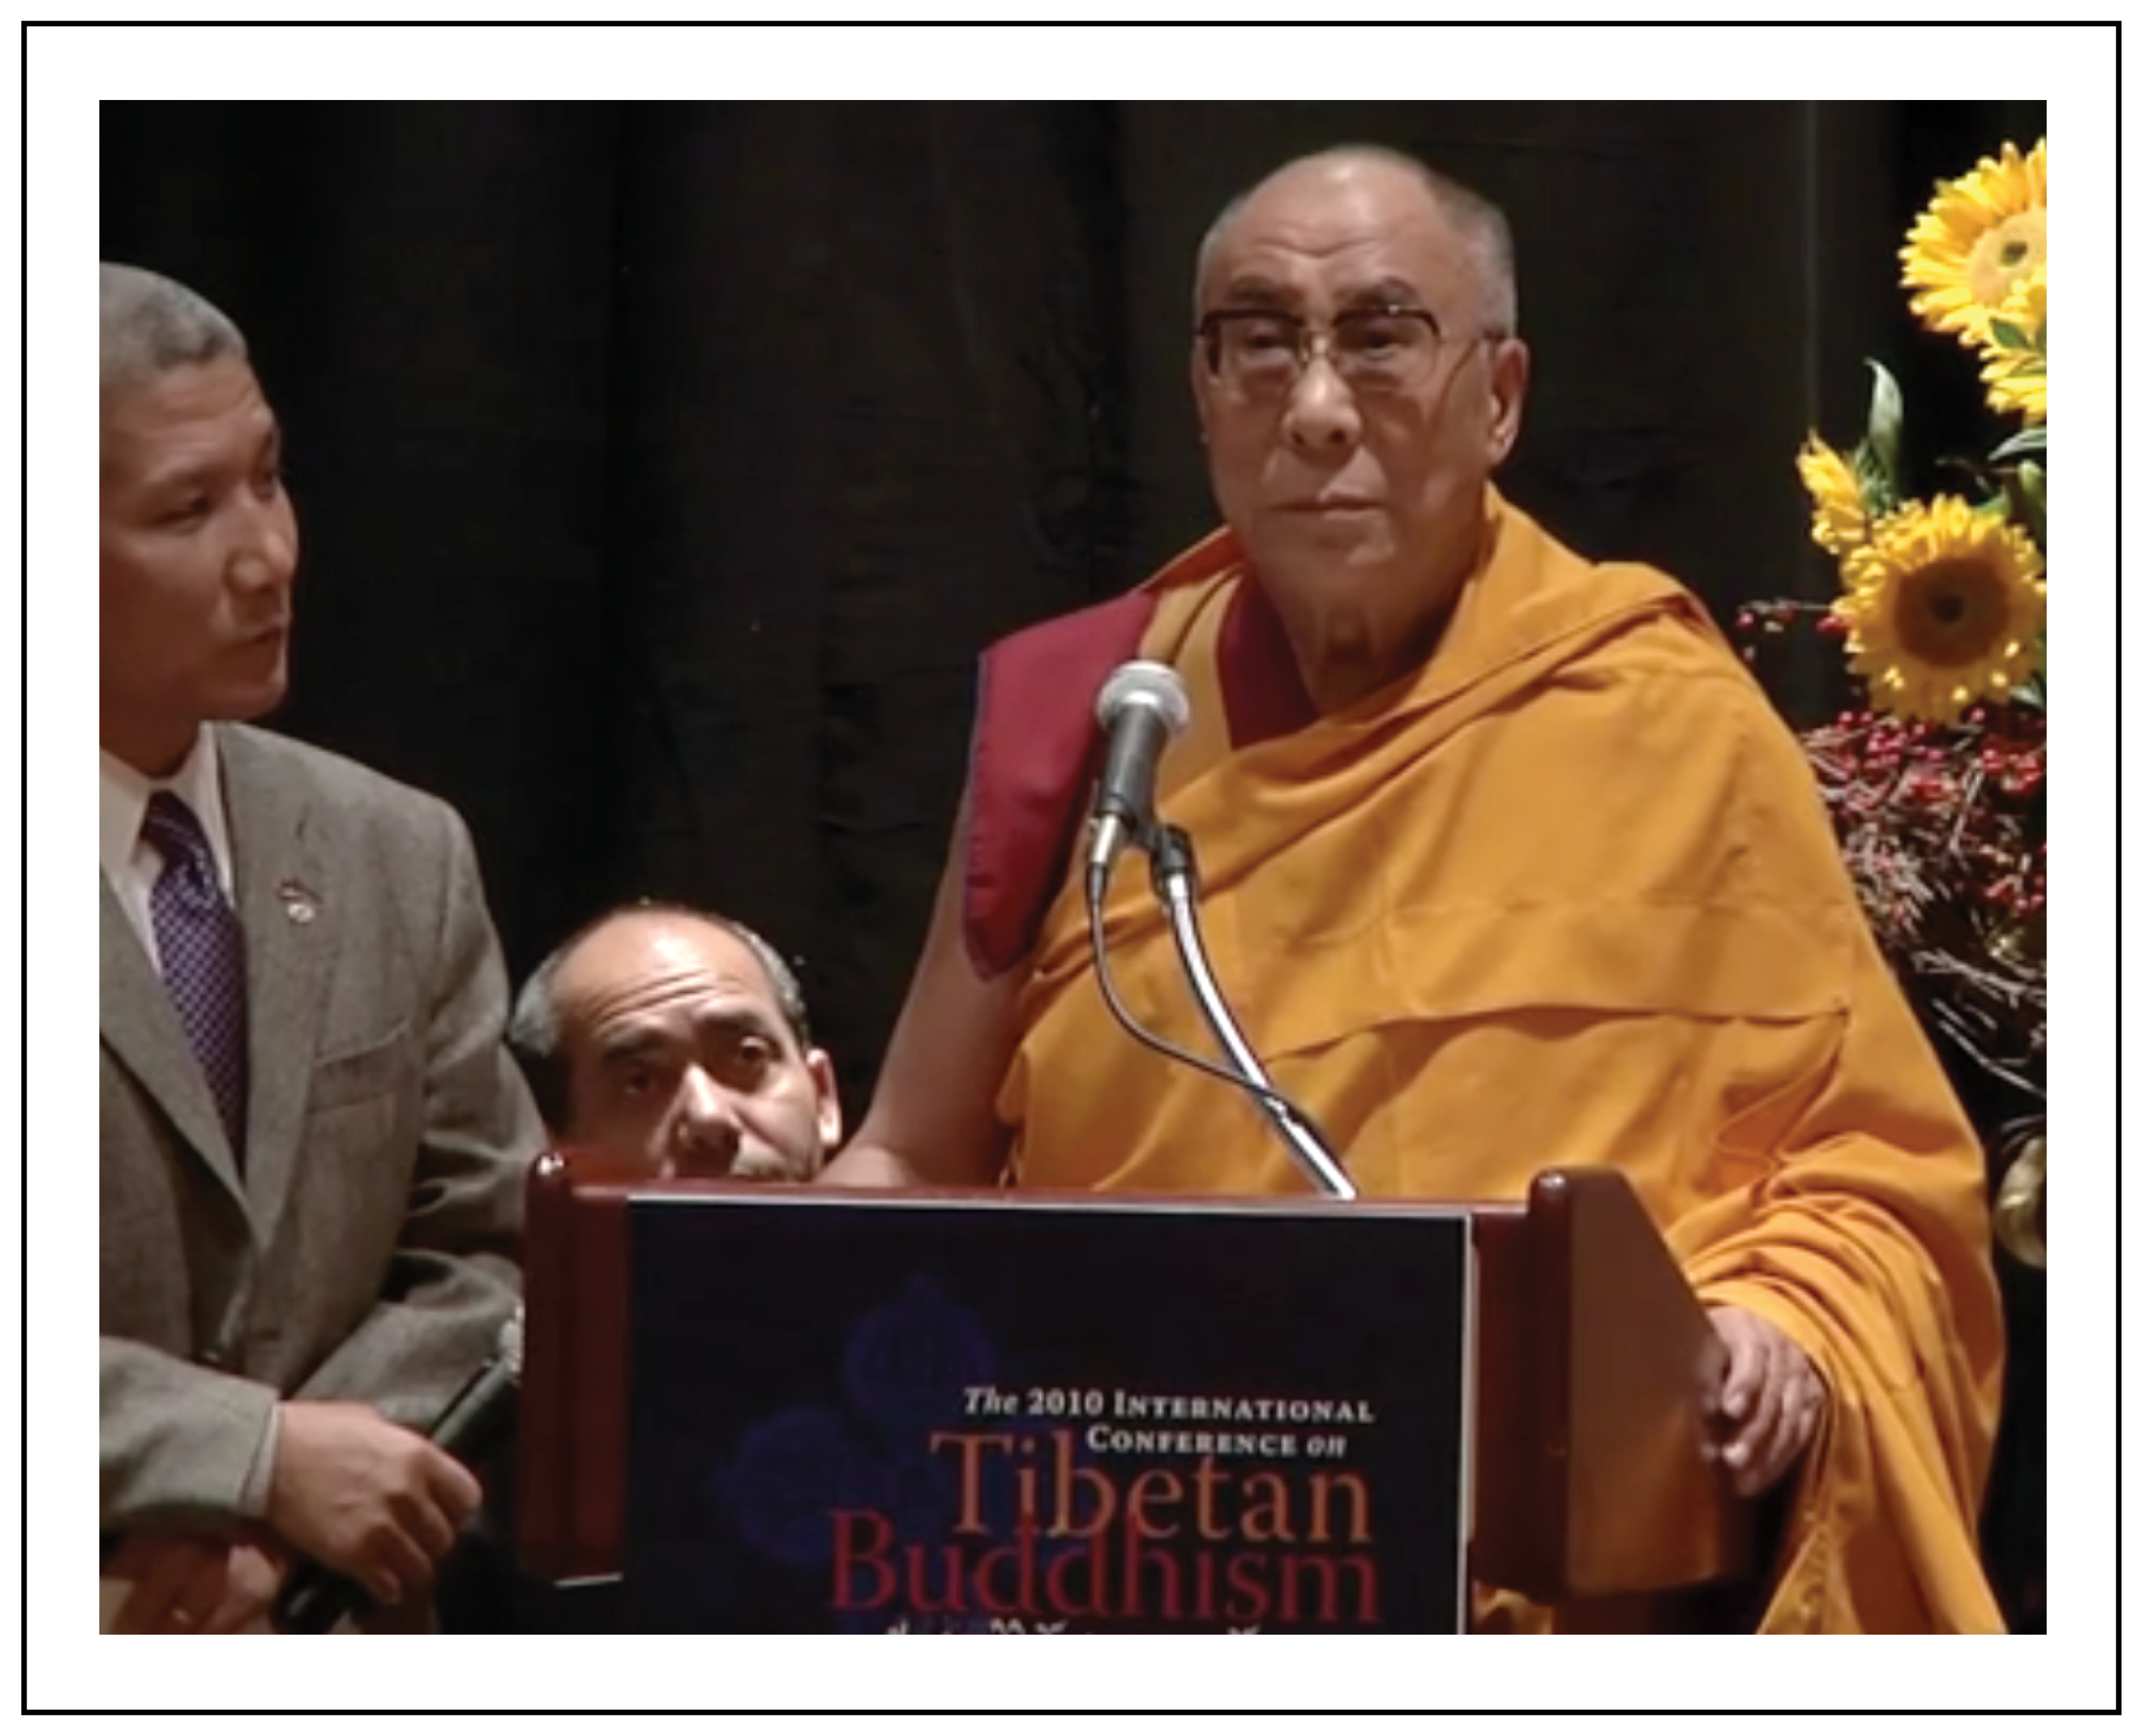 H H Dalai Lama keynote address International Conference on Tibetan Buddhism 